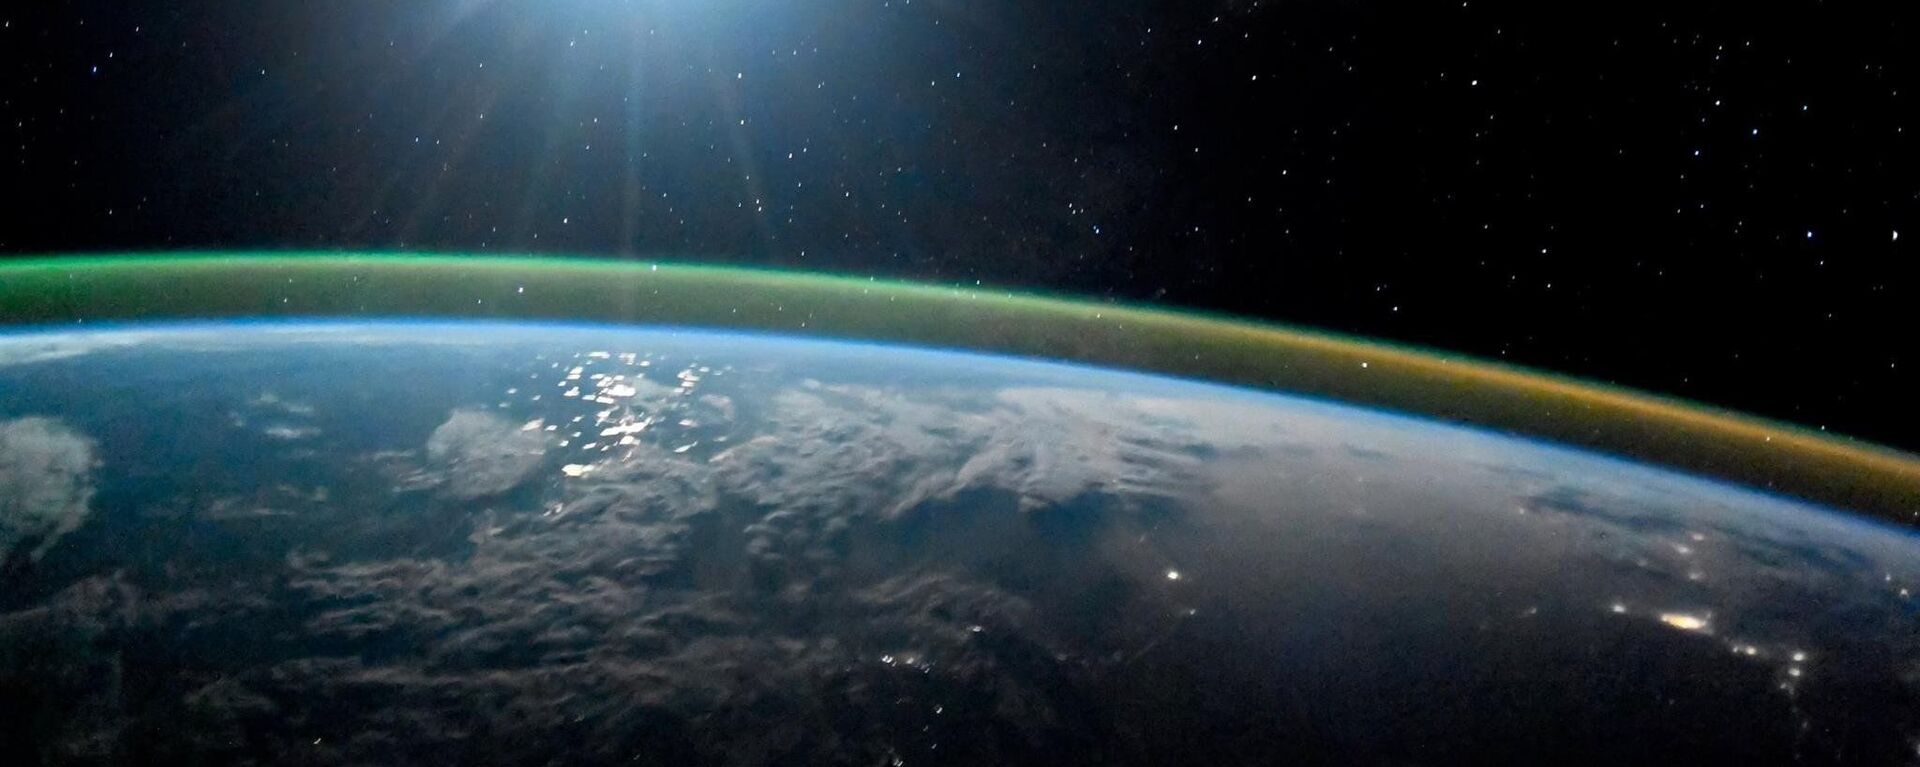 كوكب الأرض ليلا في ضوء القمر الشفق القطبي أورورا. 7 أكتوبر/ تشرين الأول 2017 - سبوتنيك عربي, 1920, 26.07.2021